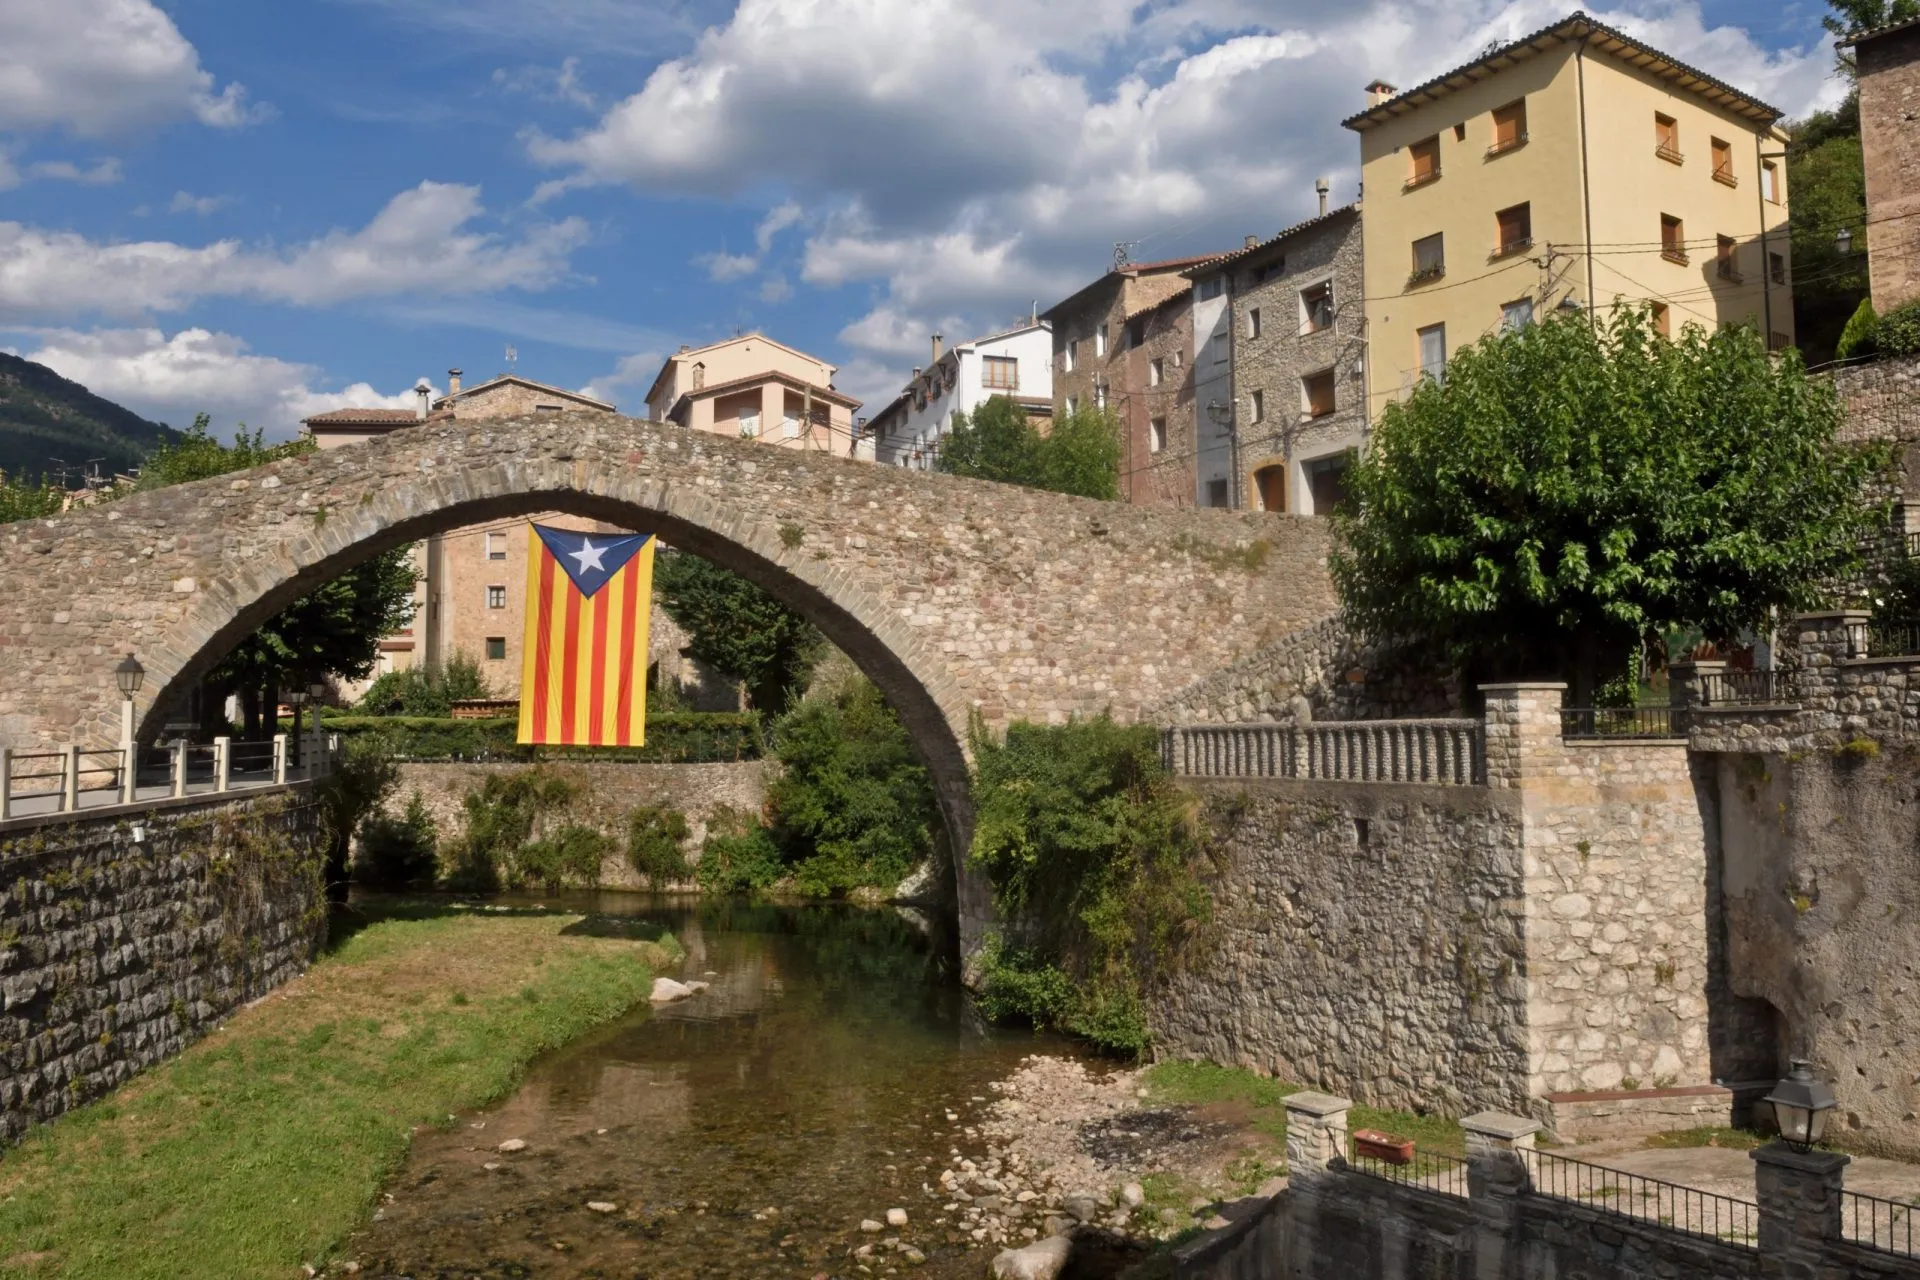 villaggio di La Poble de Lillet, Bergueda, provincia di Barcellona, Catalogna, Spagna